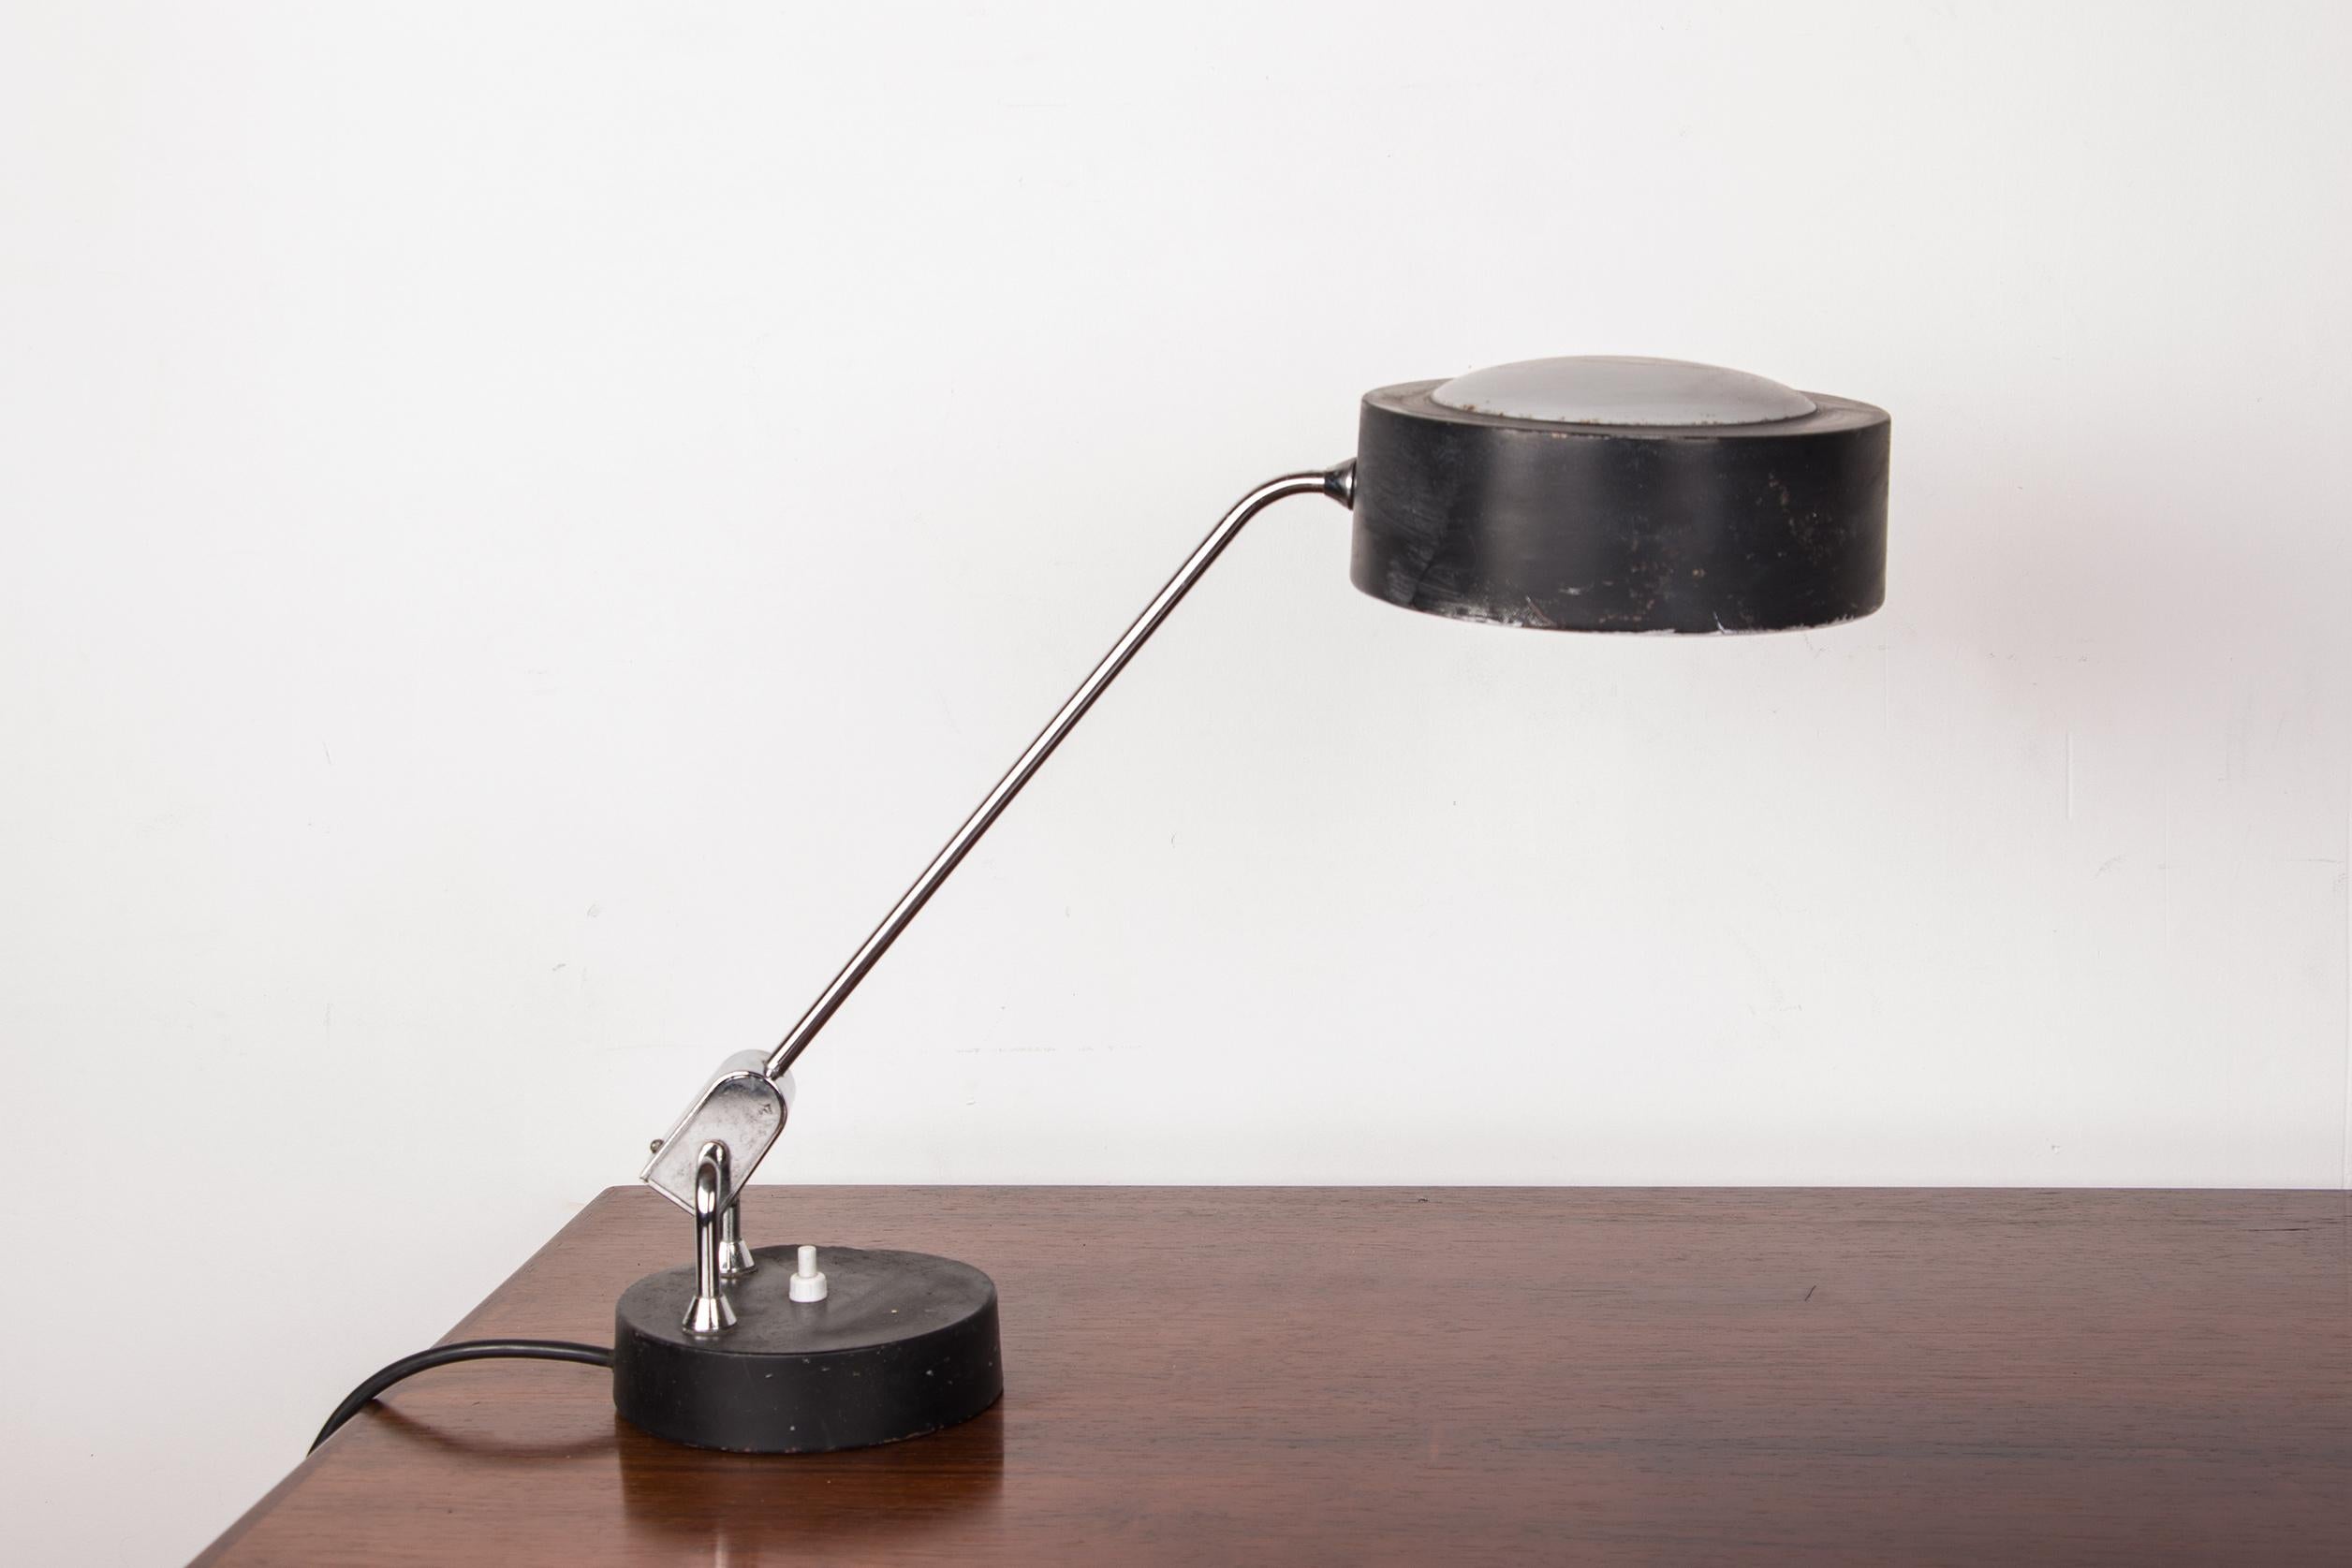 Hübsche große Schreibtischlampe mit Gelenkarm, mit dem Sie die Lichtrichtung einstellen können. Leichter Deckel und Sockel auf kugelförmigem Sockel.
